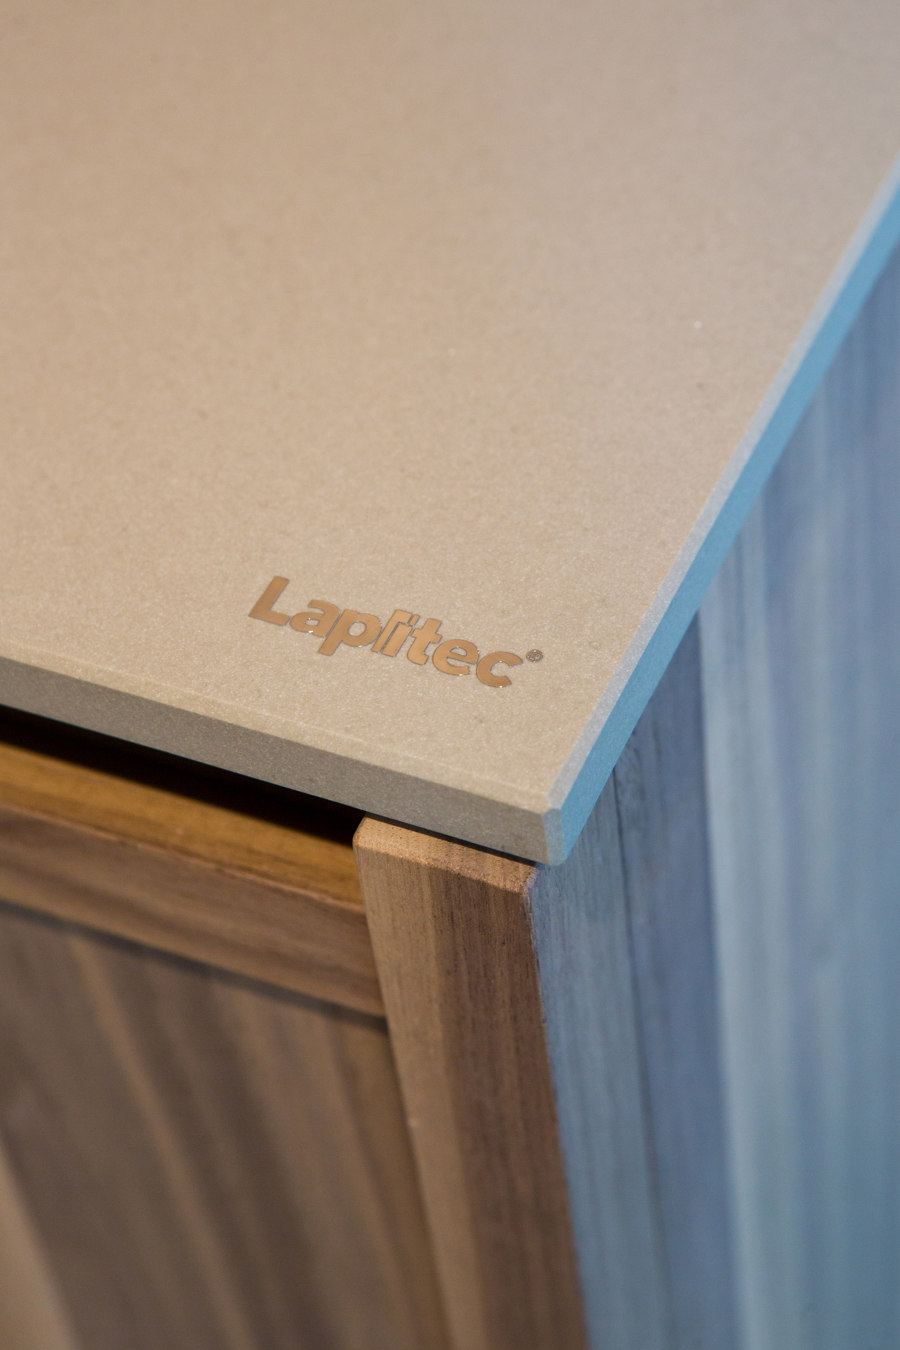 NO.MADE - LUXURY MOBILE HOME de Lapitec | Références des fabricantes